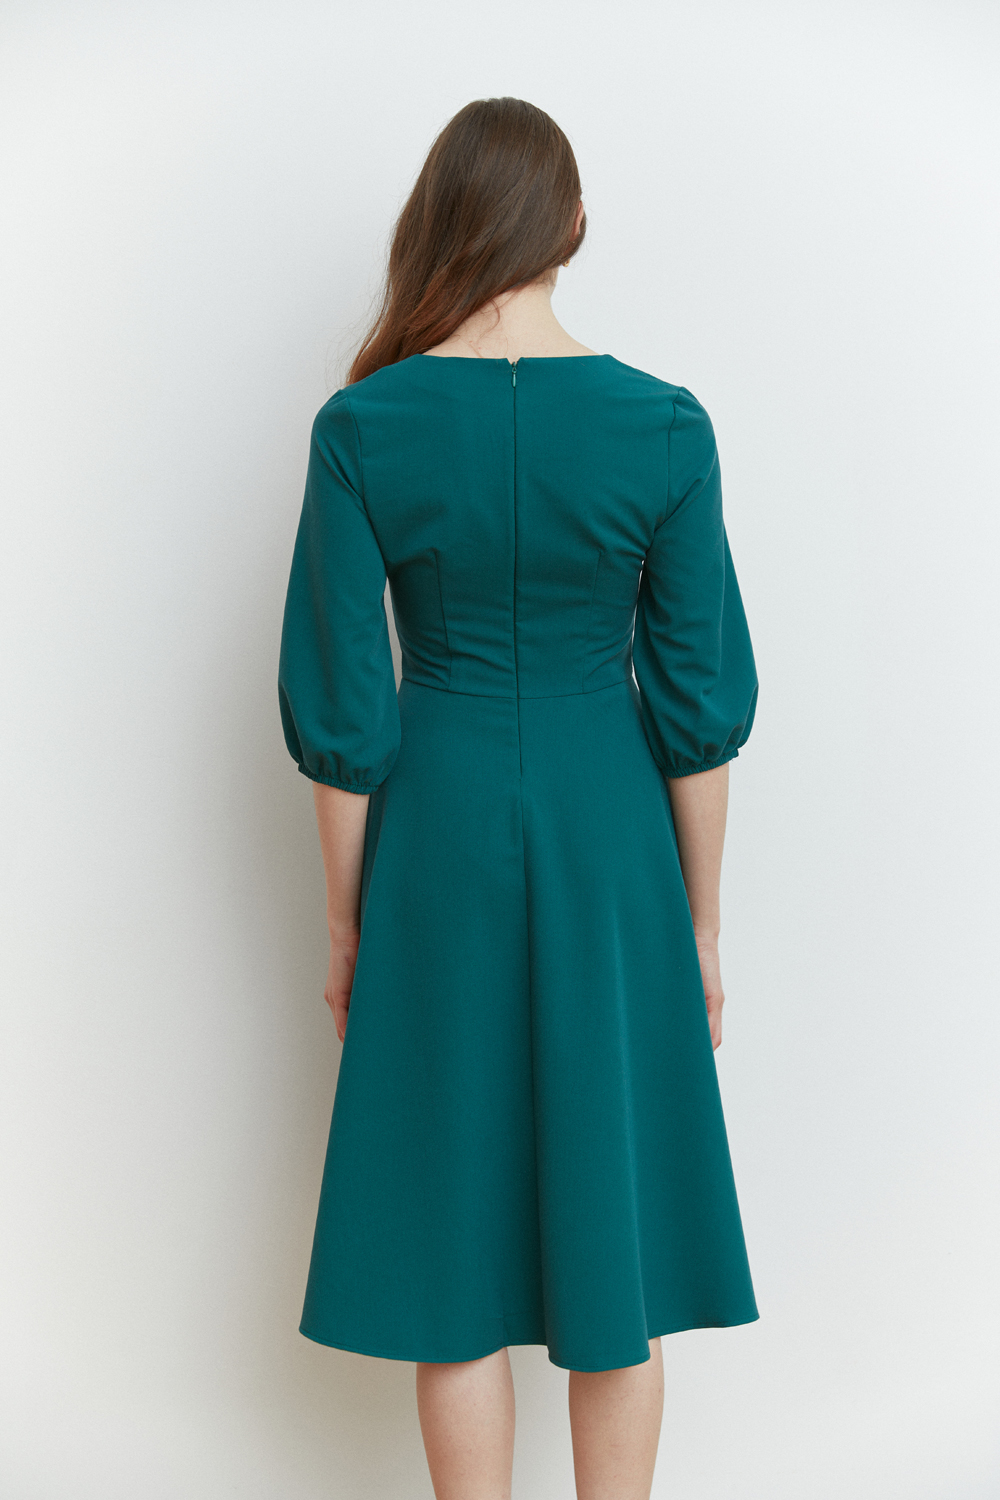 Зеленое платье длины миди с V-образным вырезом горловины и рельефным лифом